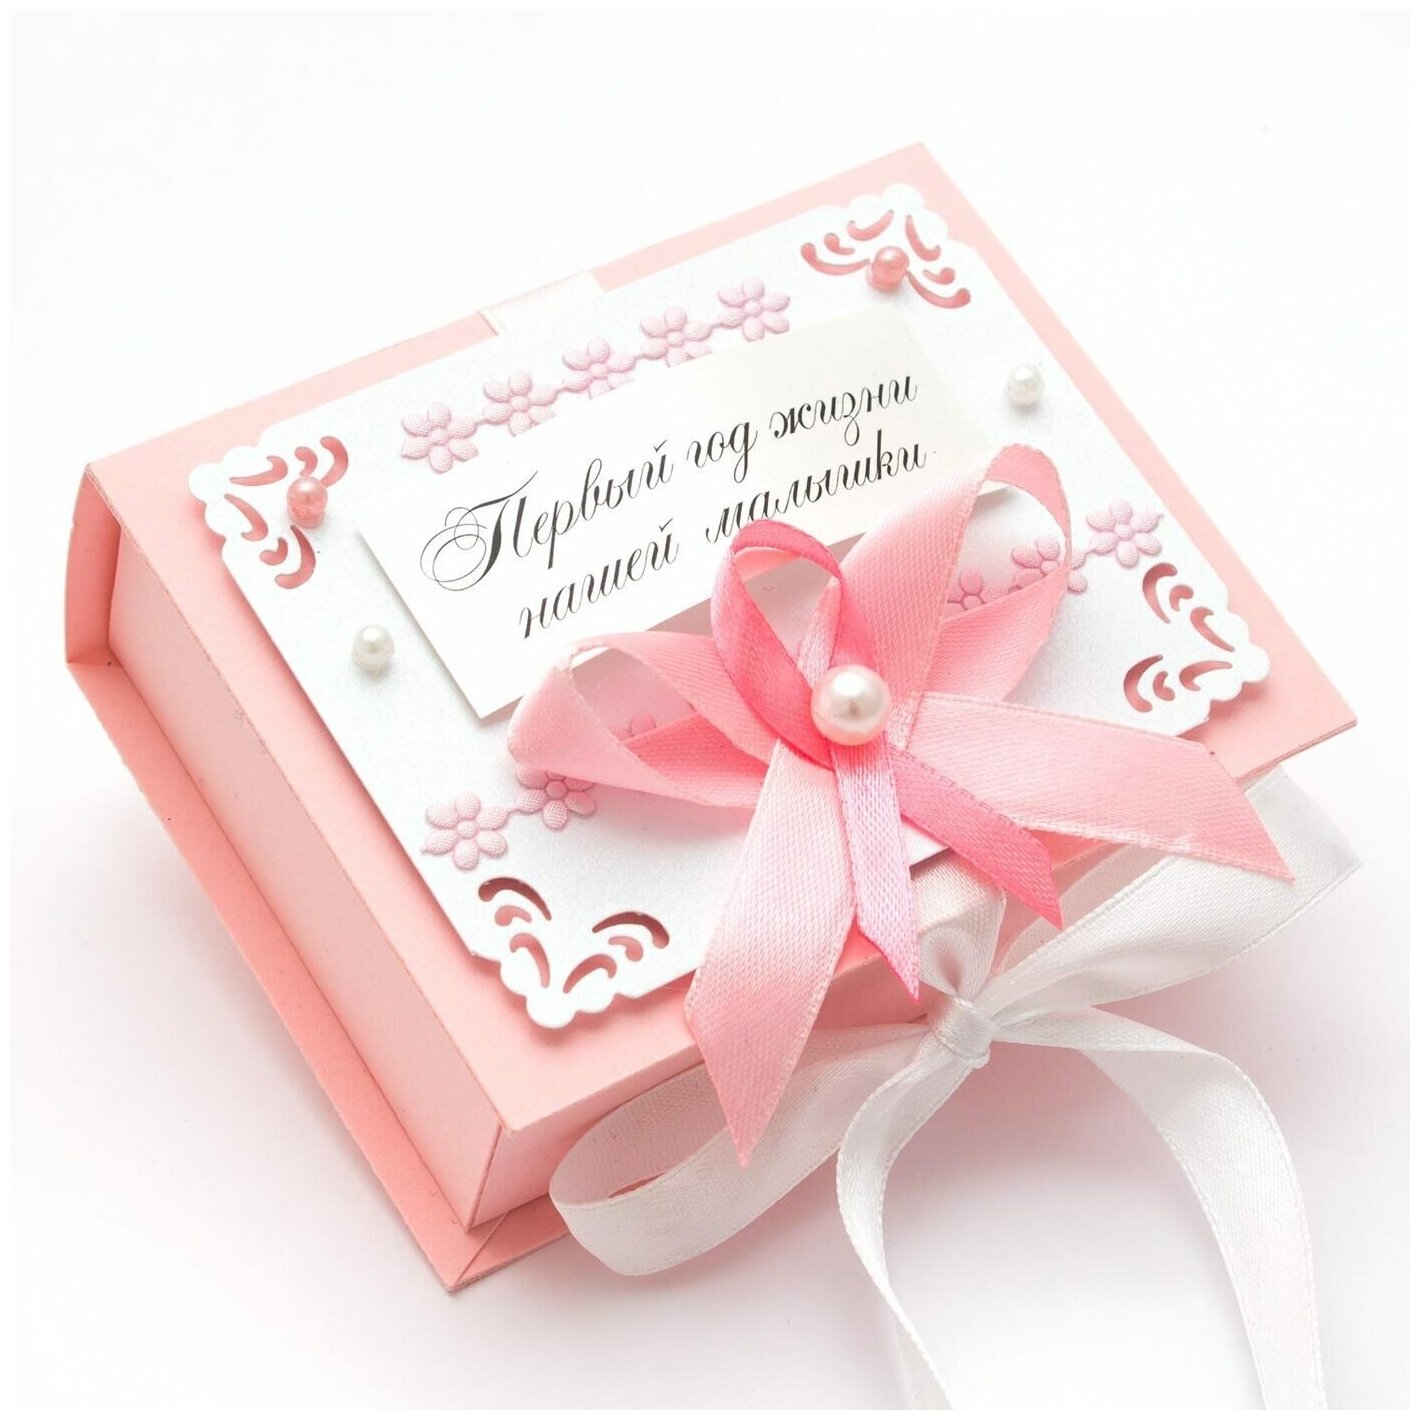 Розовая коробочка для бирки из роддома и флэшки "Первый год нашей малышки" из плотного картона пастельного оттенка, с розовым бантом, белой атласной лентой, бусинами и бумажной аппликацией